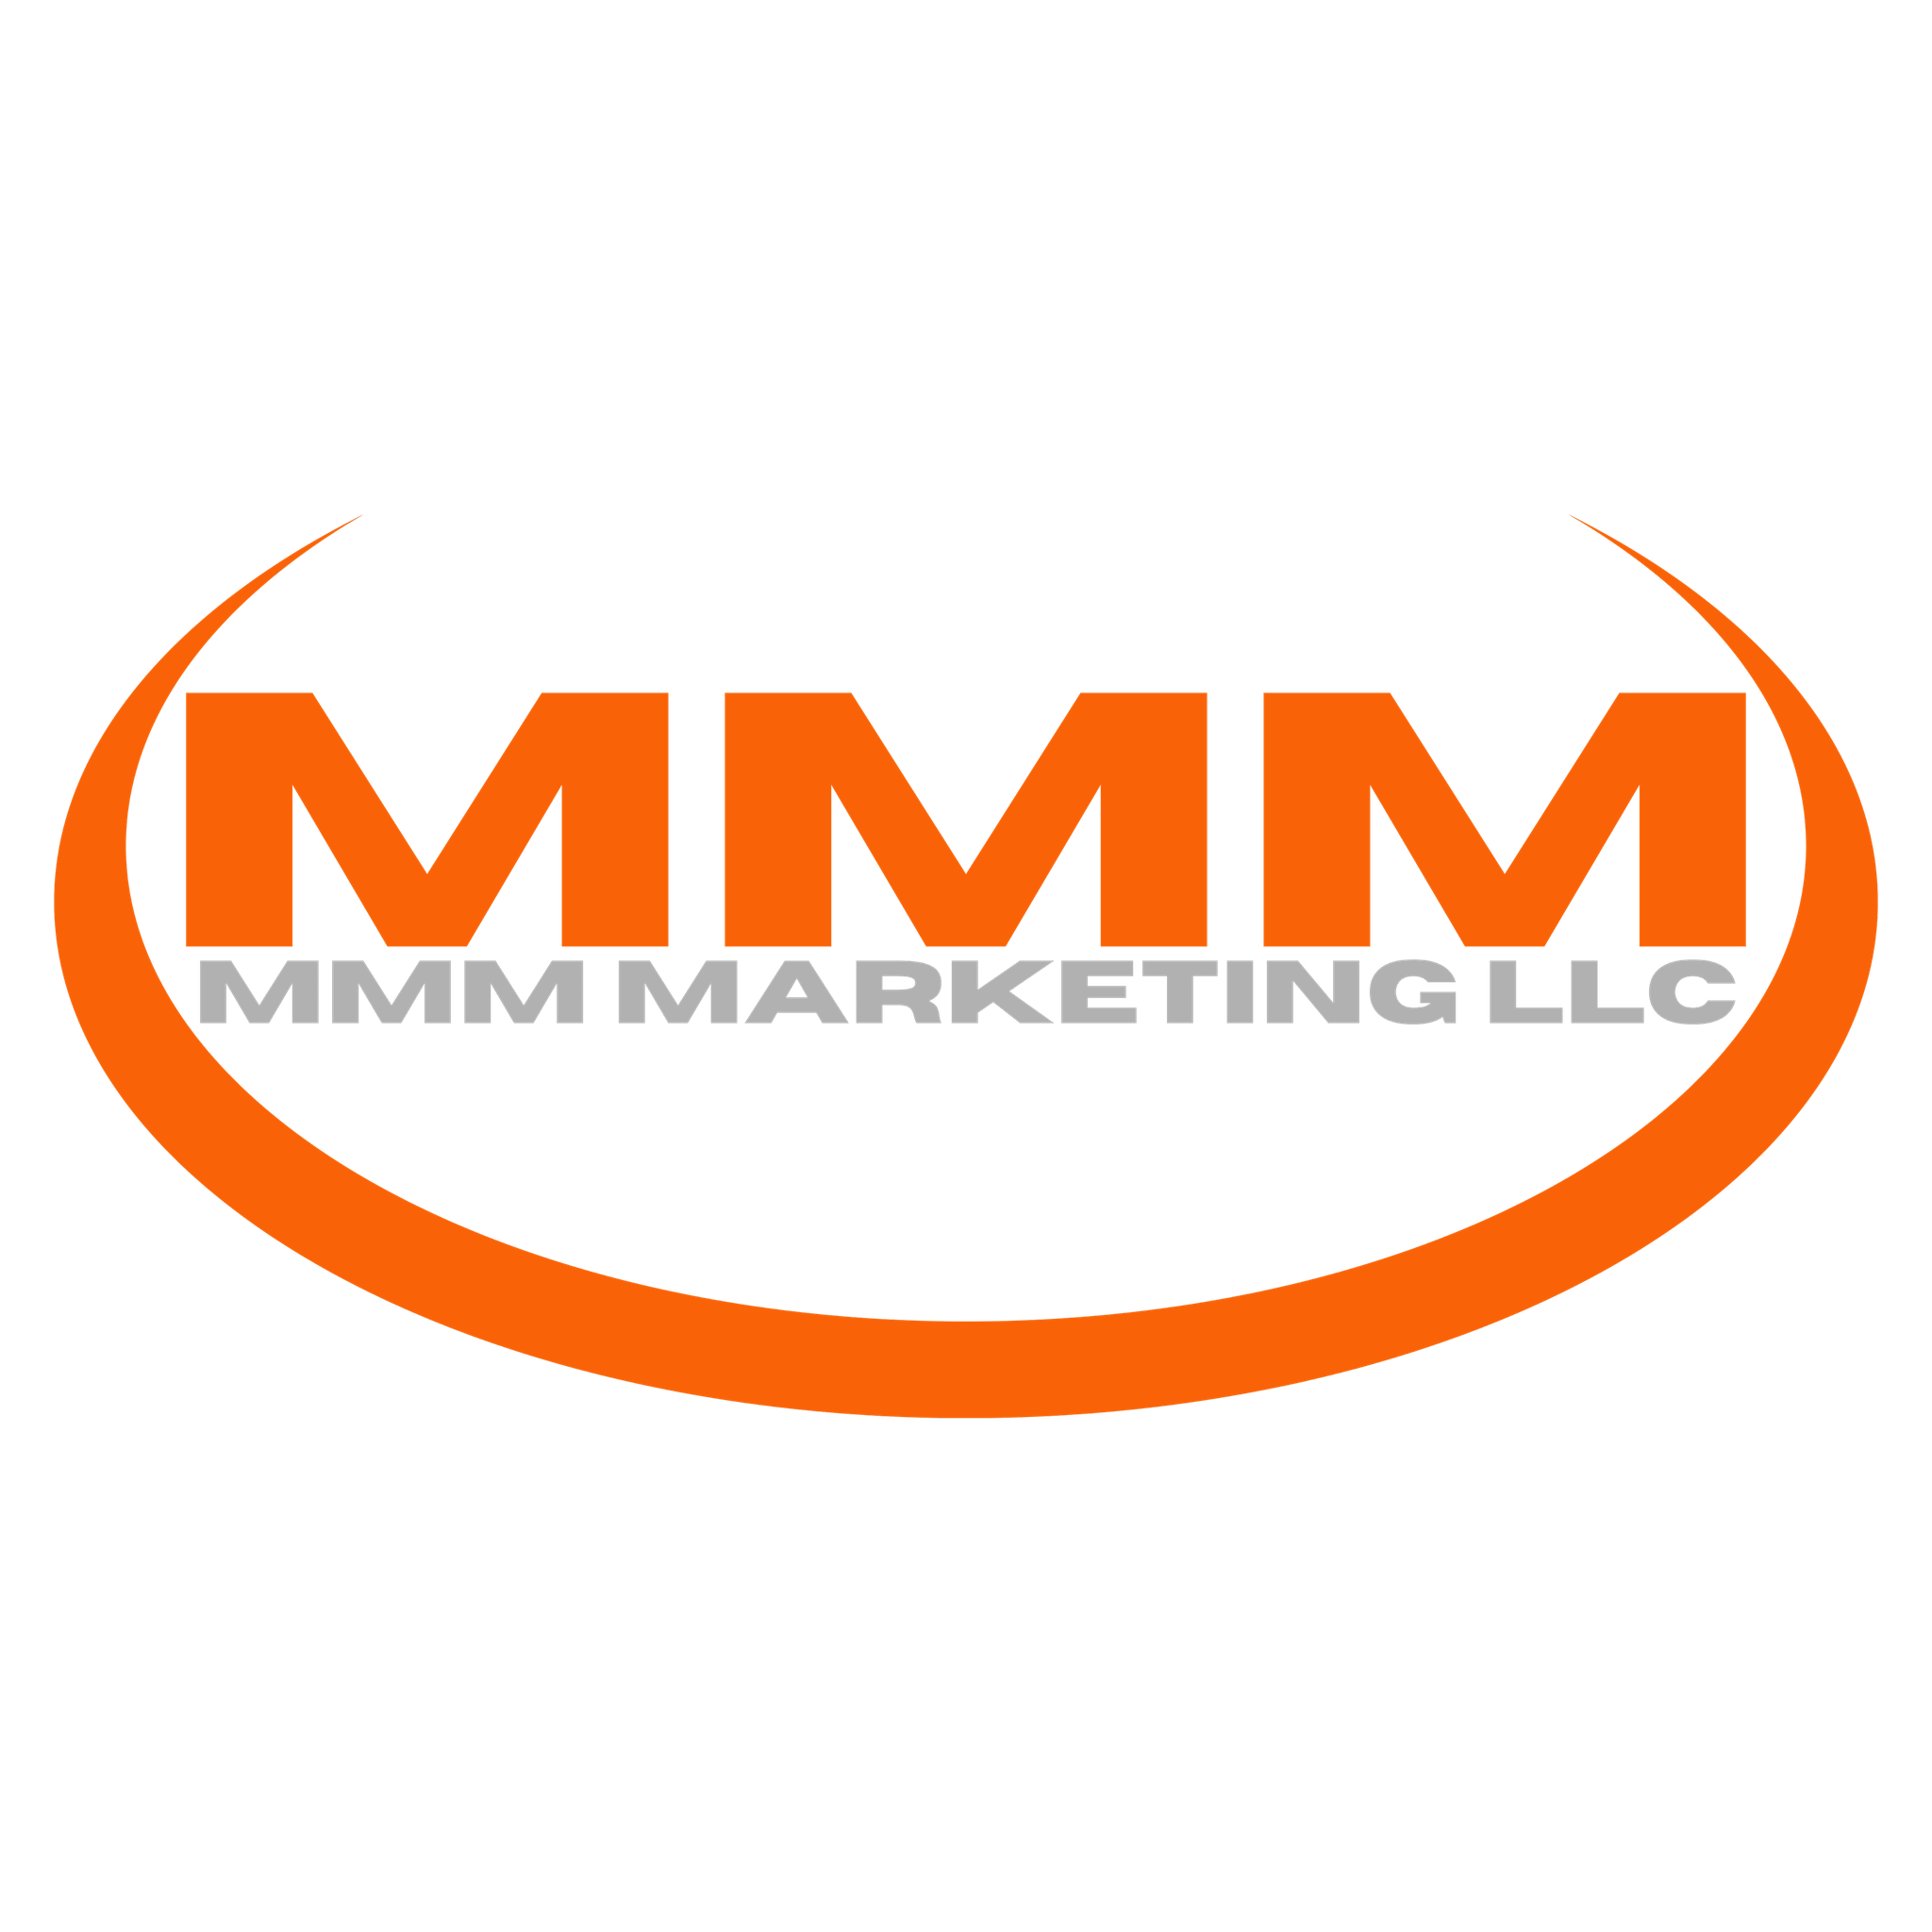 MMM MARKETING LLC